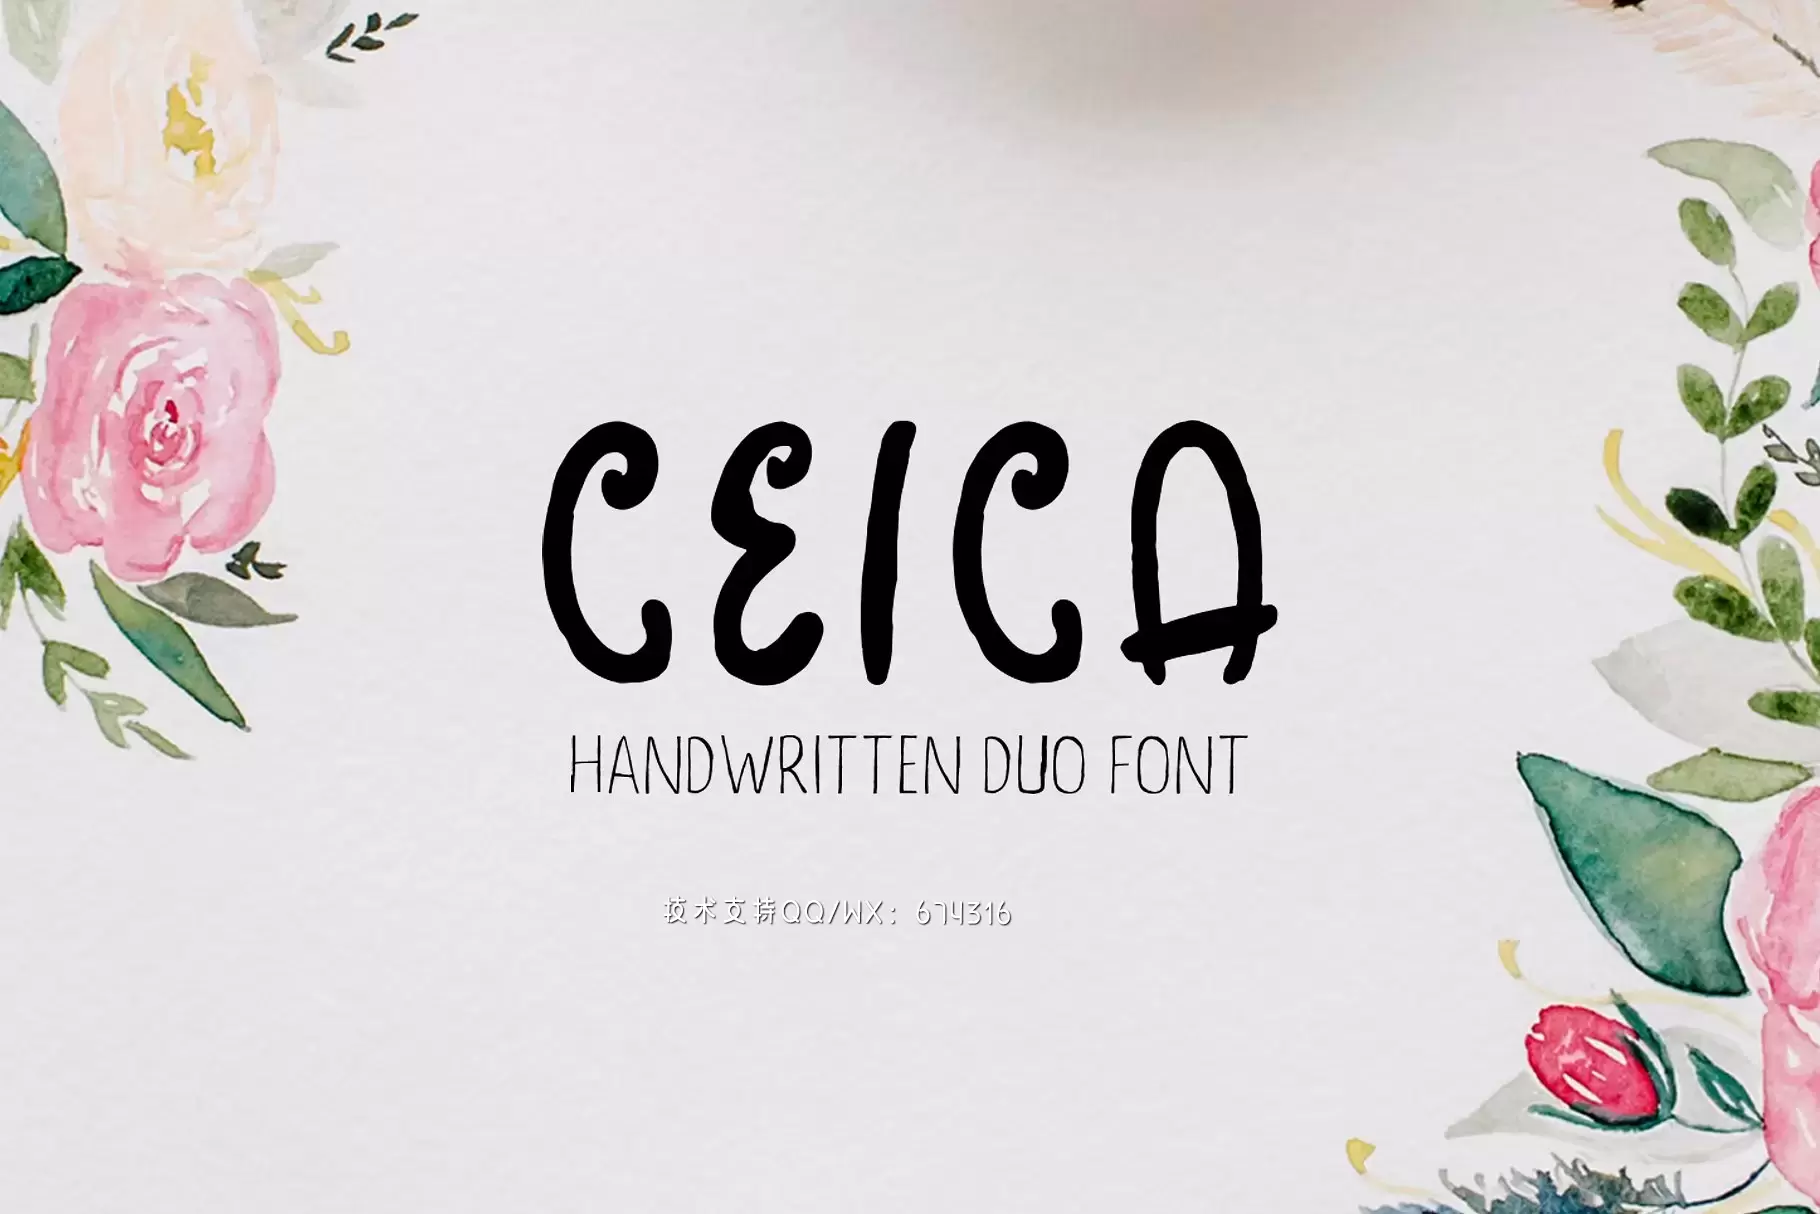 手写花卉字体 Ceica Handwritten Duo Font + Bonus免费下载